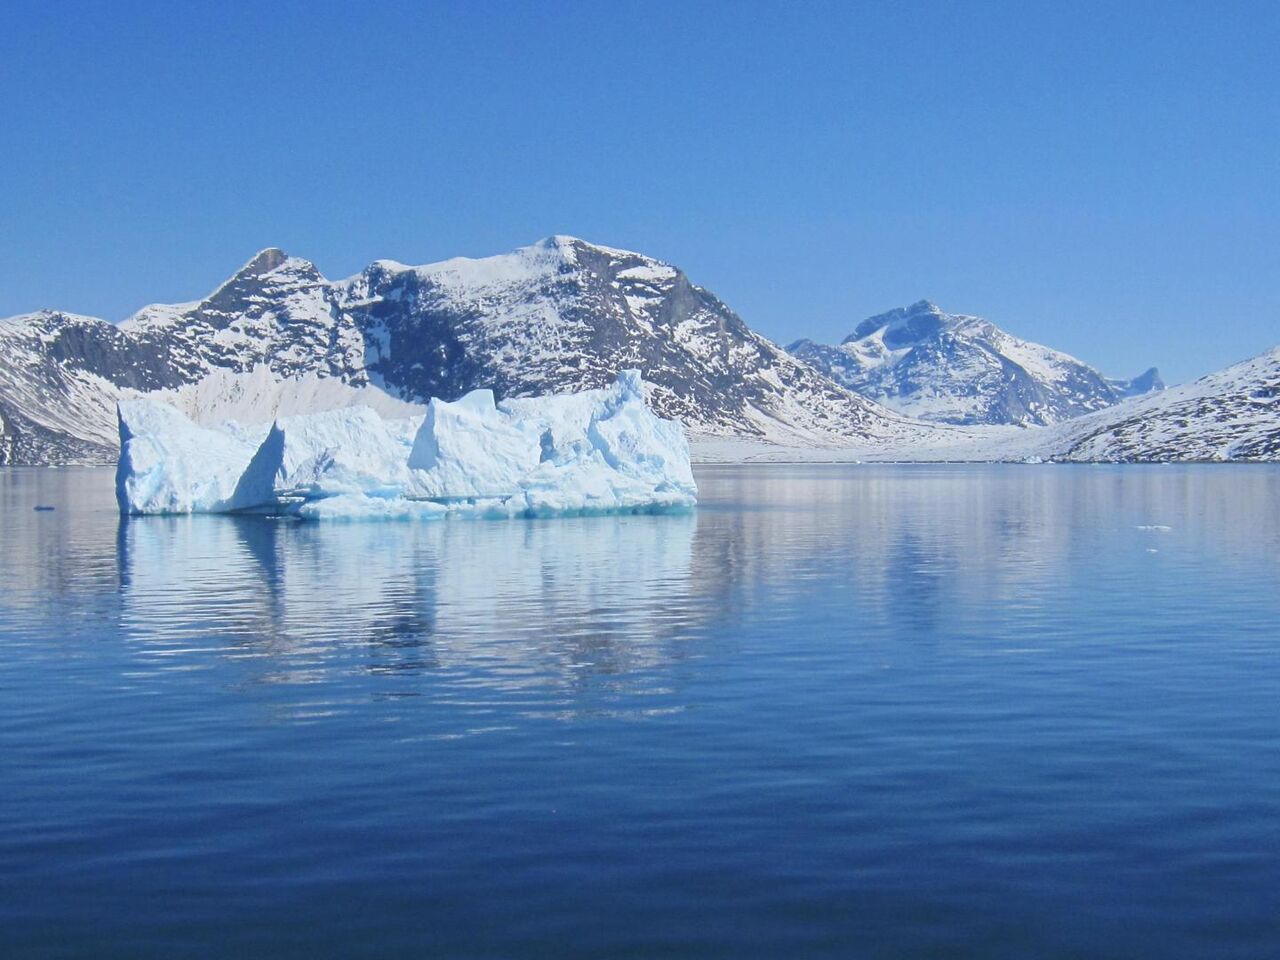 افزایش کوه‌های یخی به معنای افزایش میزان آهن اقیانوس‌ها نیست